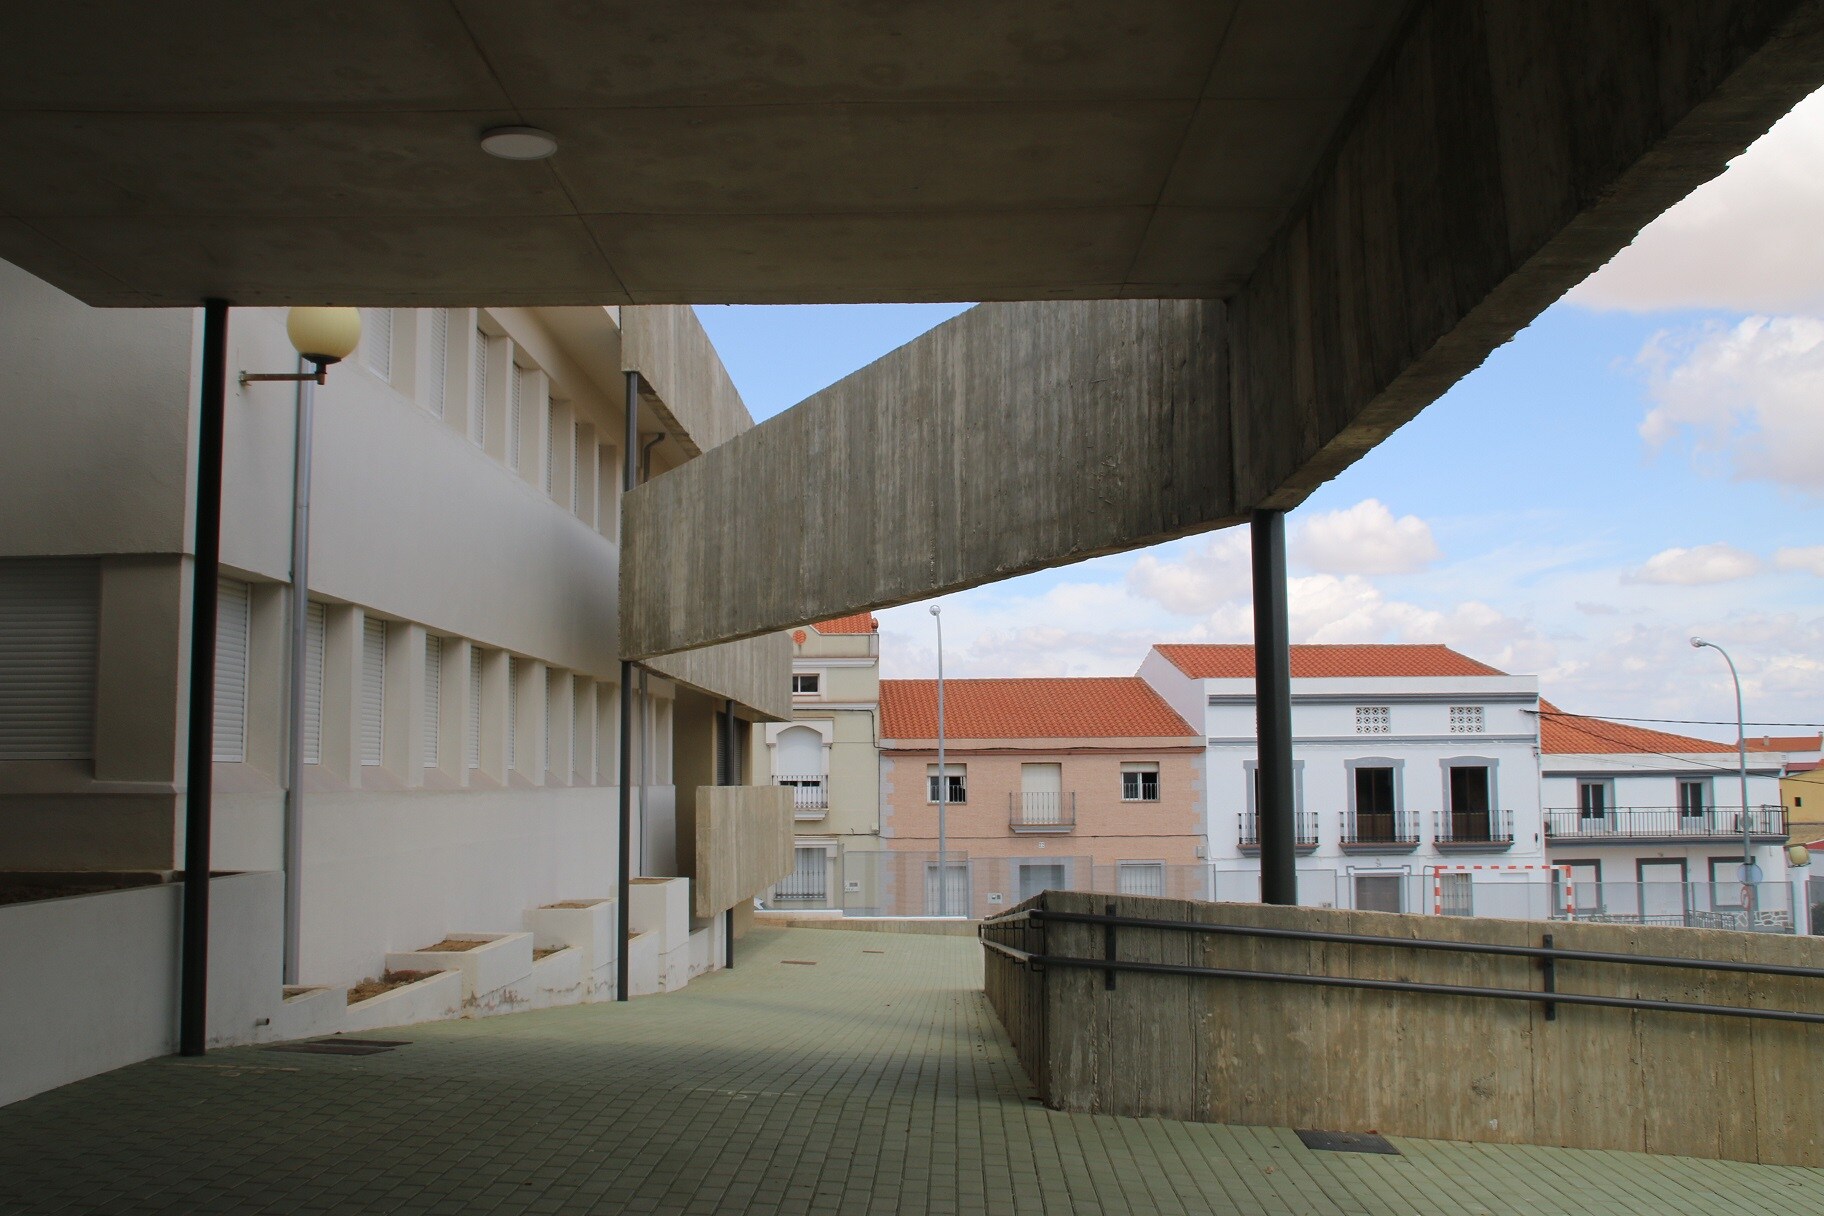 Reforma y nuevas construcciones en el colegio Nuestra Señora de Piedraescrita. 